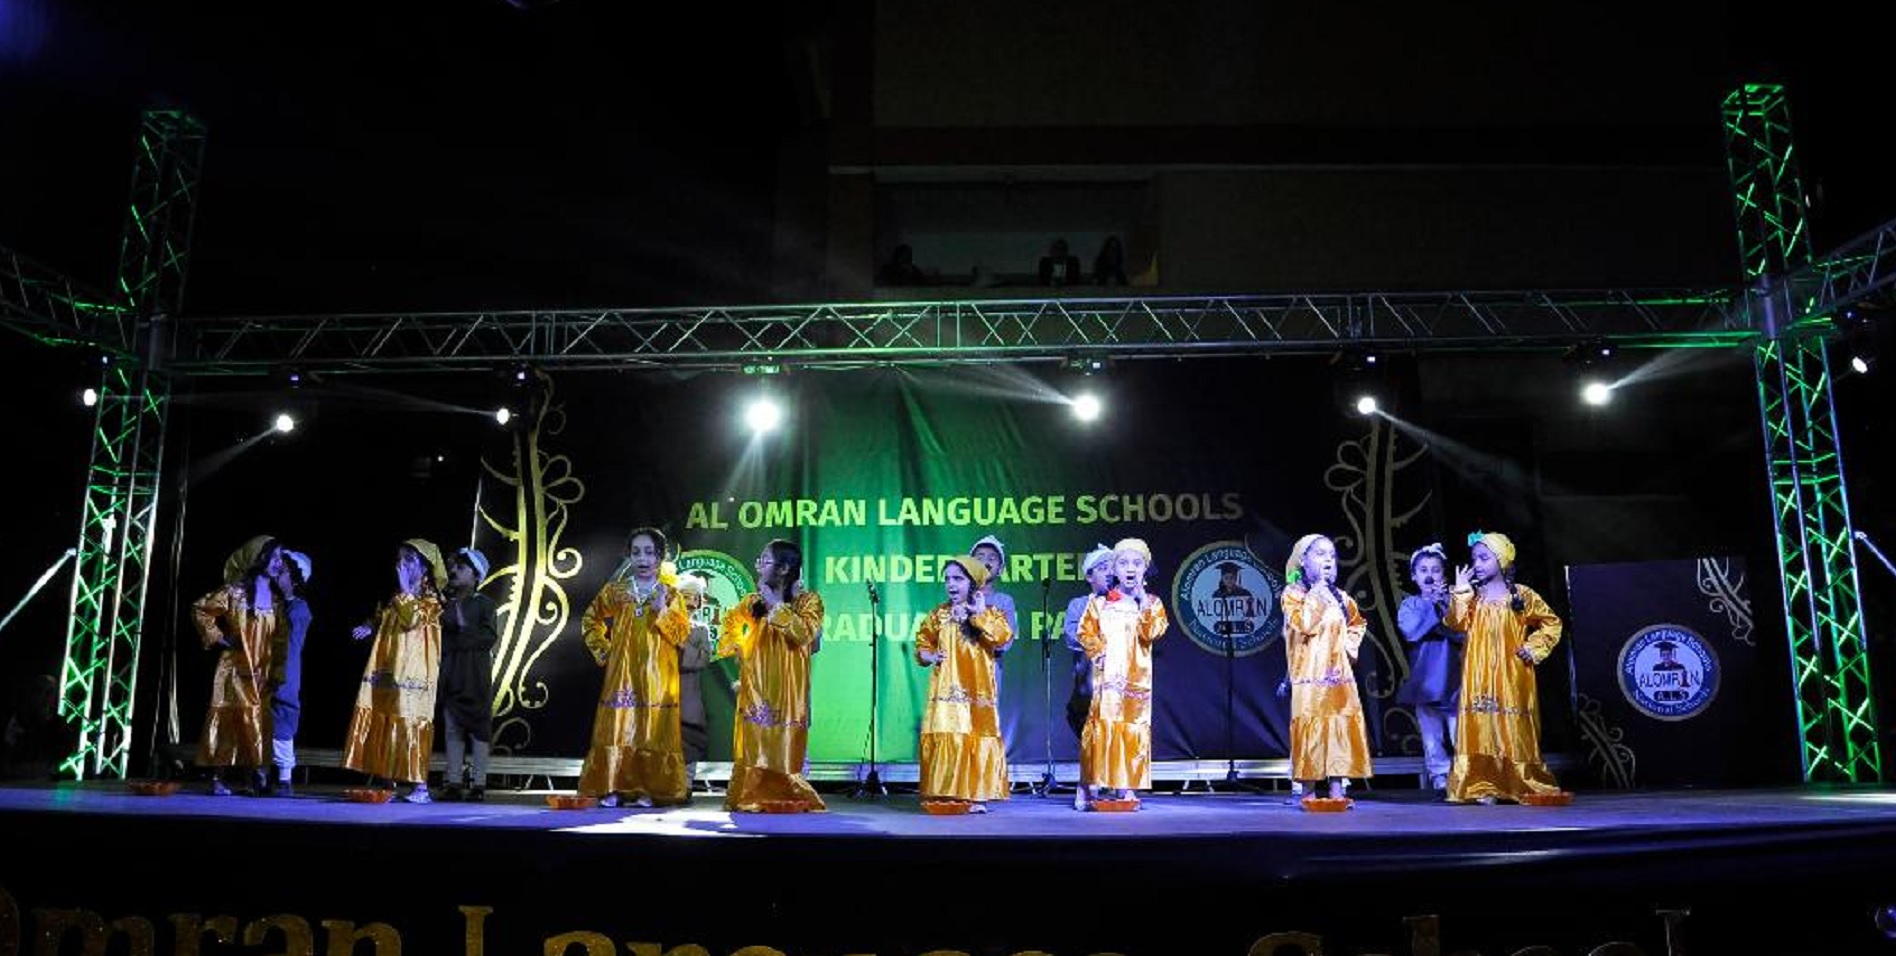 Al-Omran Language Schools Concerts